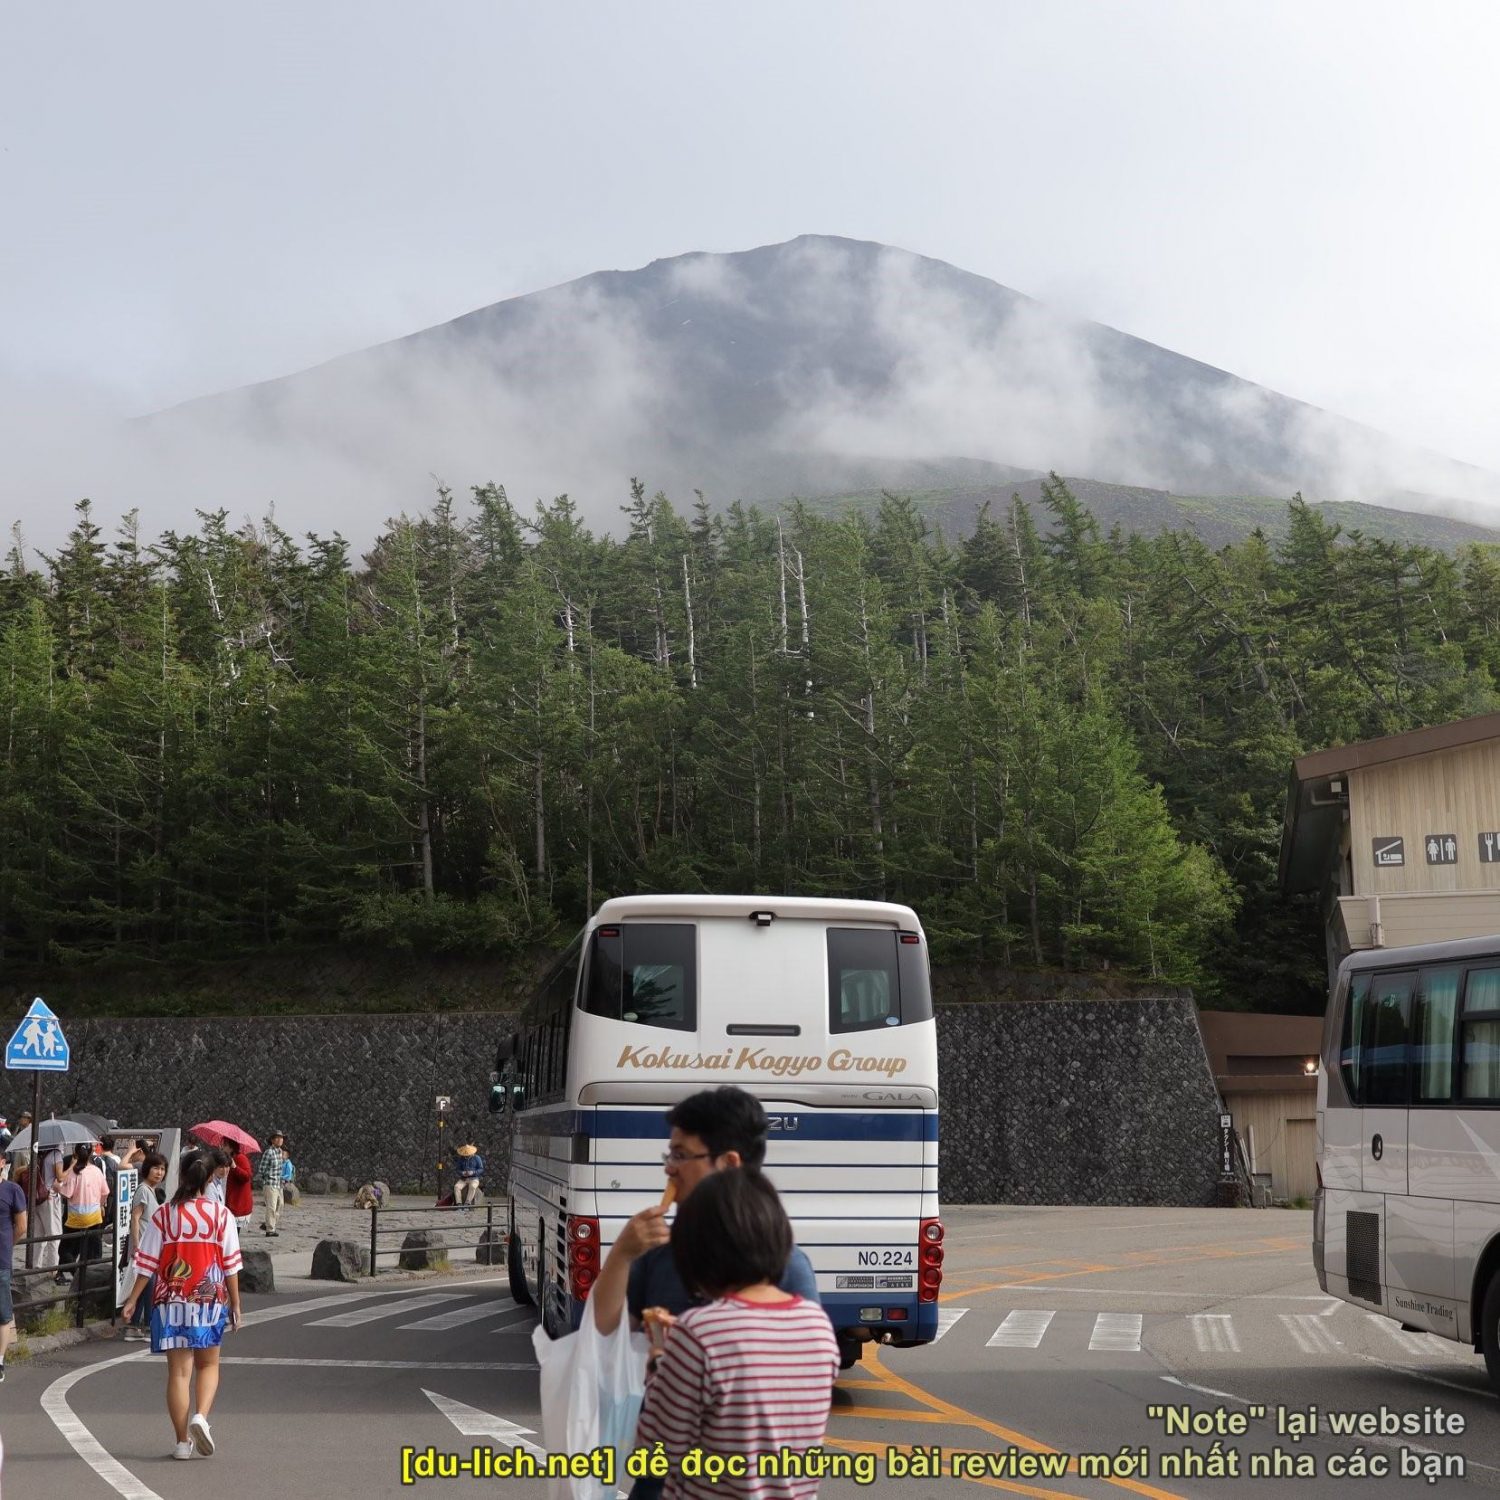 Xe bus đưa tụi mình tới tận chân núi Phú Sĩ